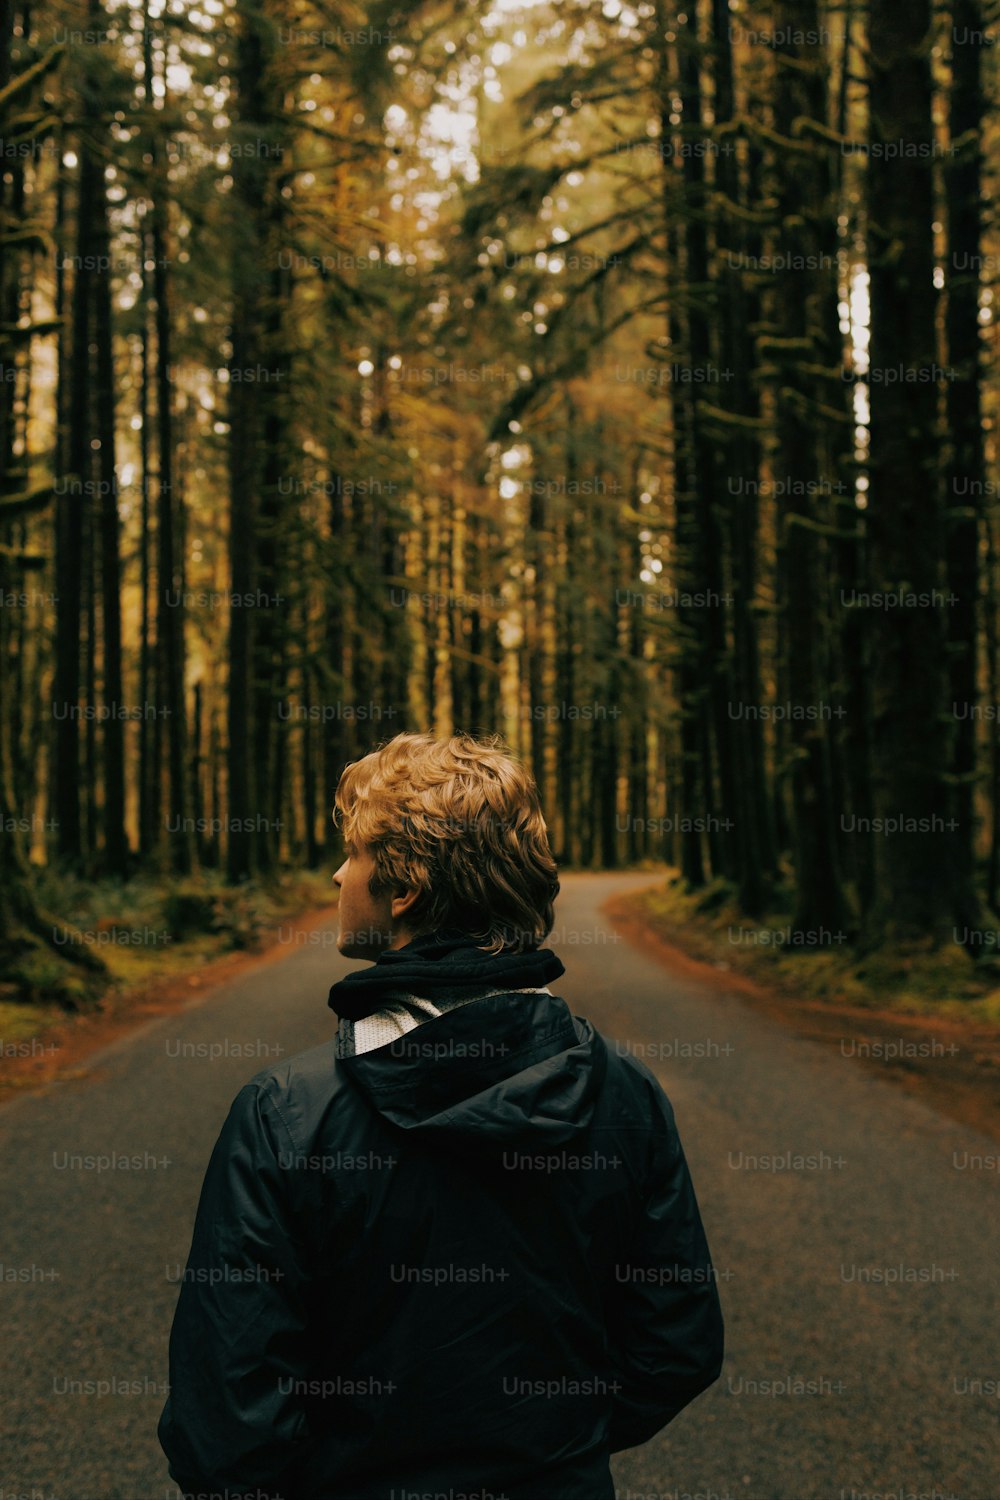 Una persona parada en una carretera en medio de un bosque